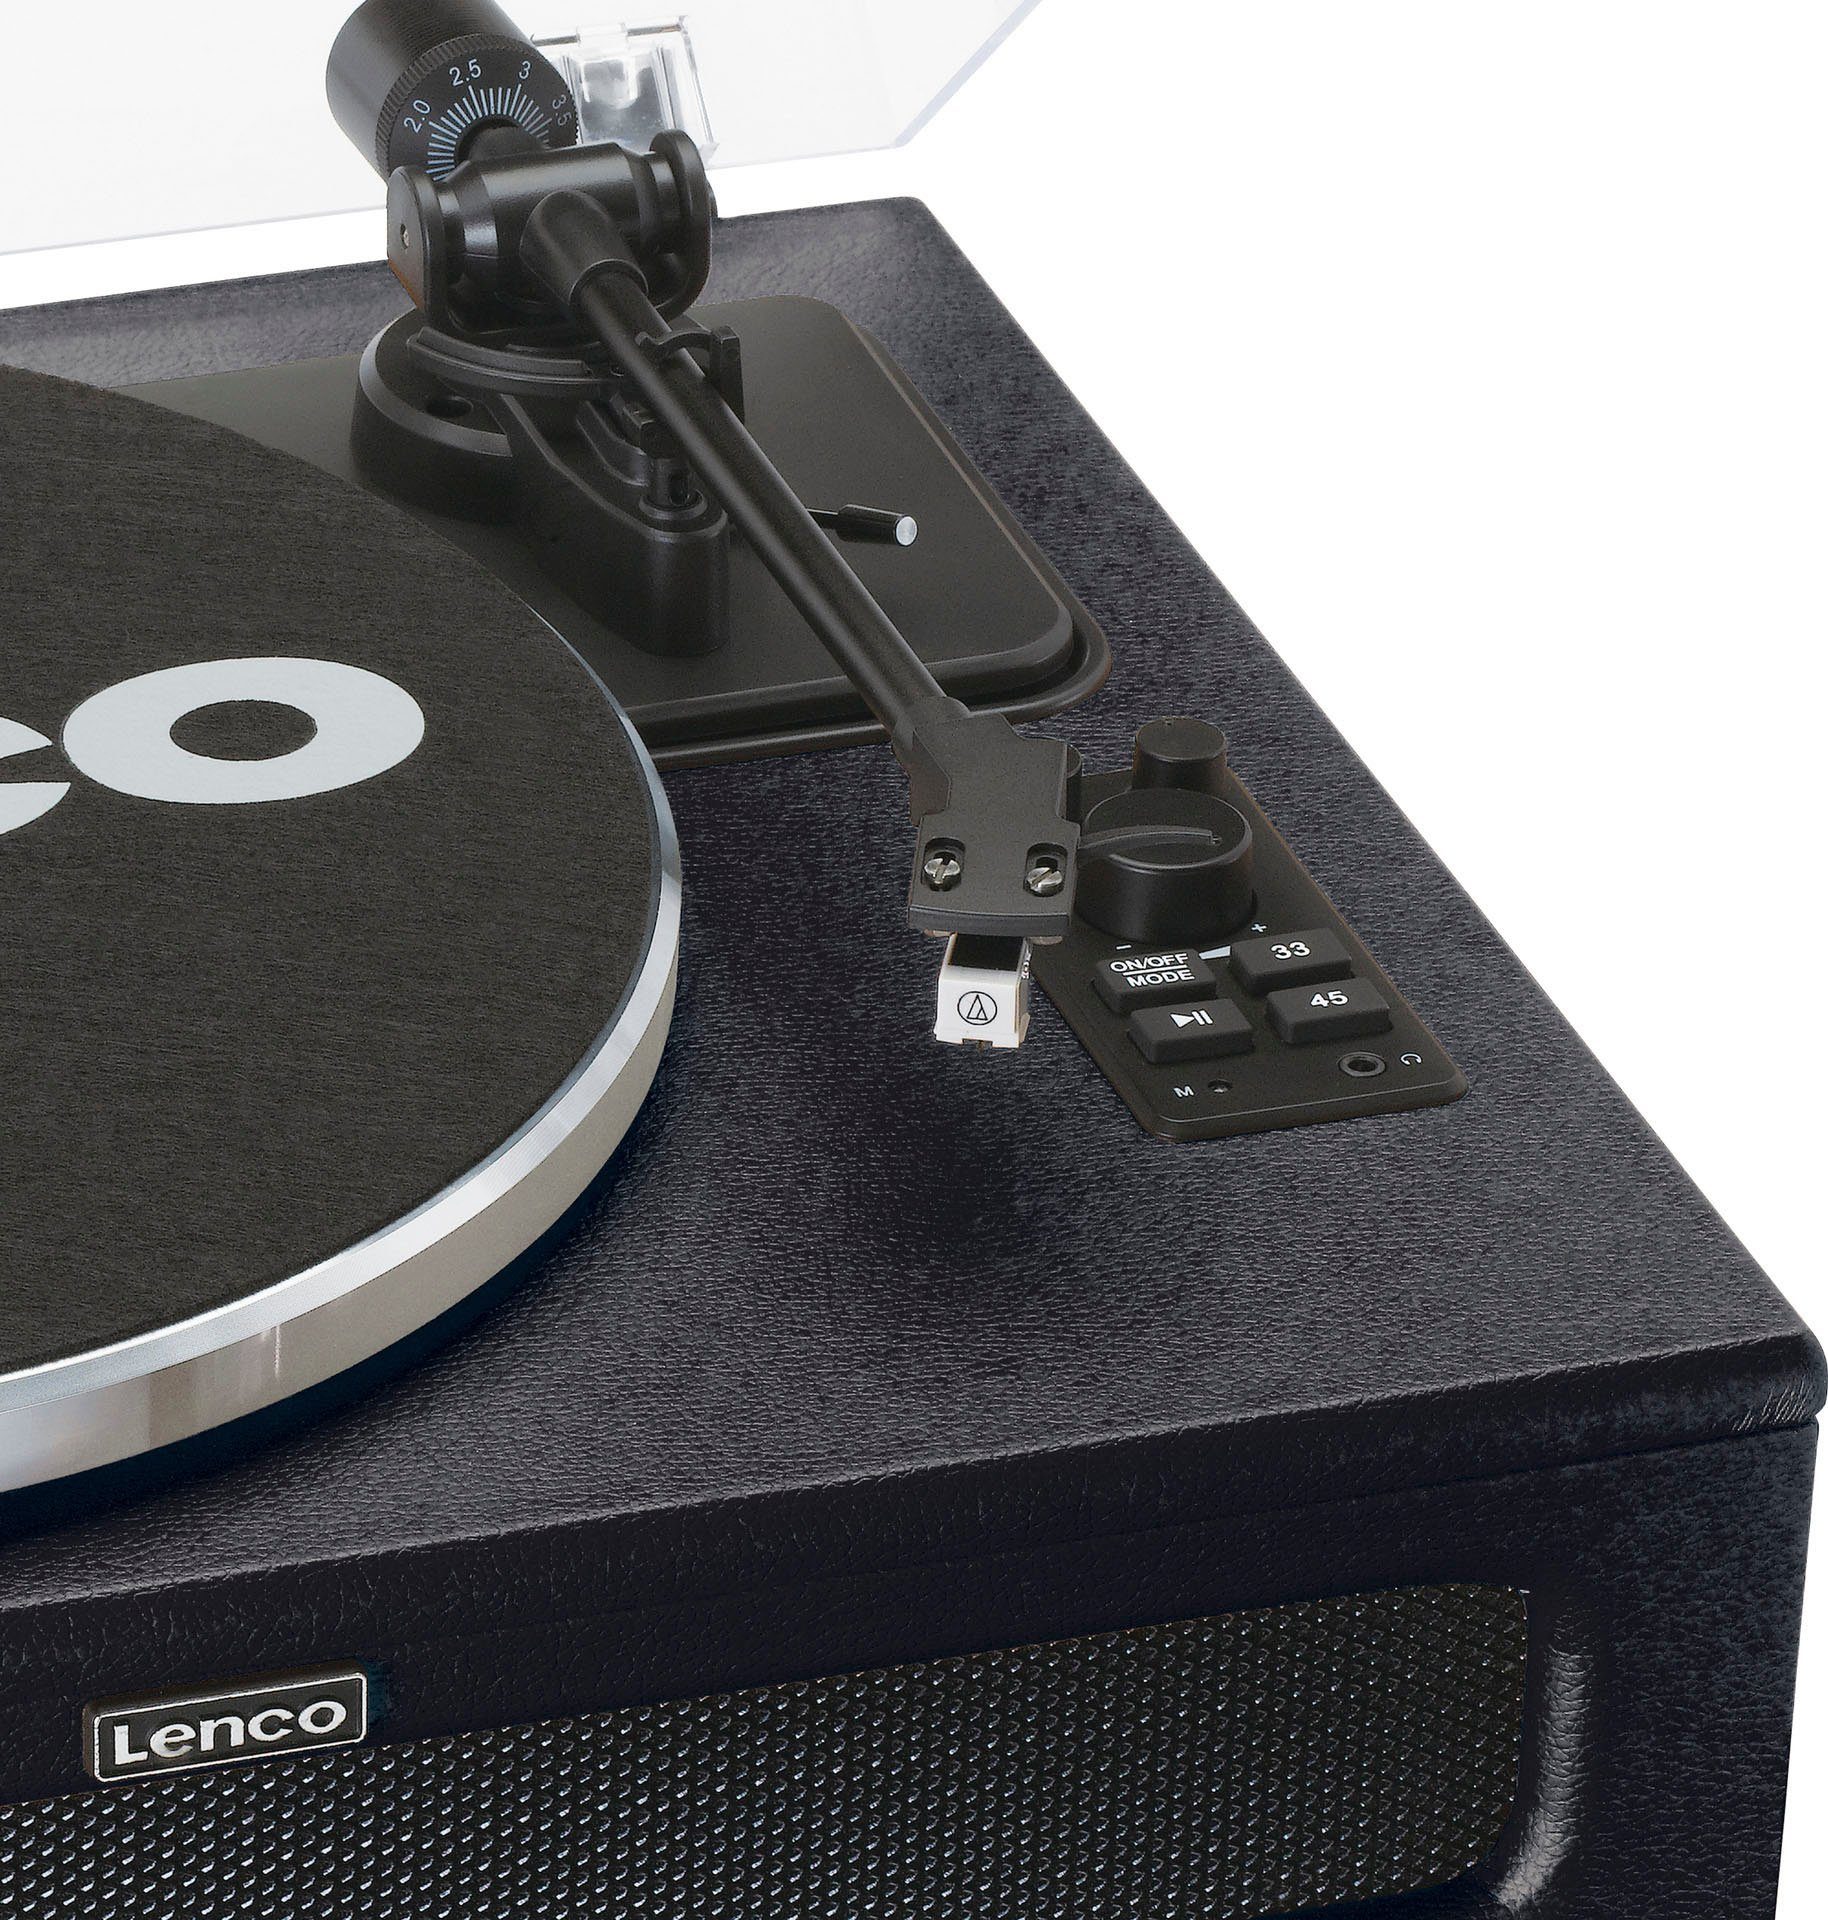 Plattenspieler Lenco schwarz LS-430 Plattenspieler 4 mit Lautsprechern (Riemenantrieb)